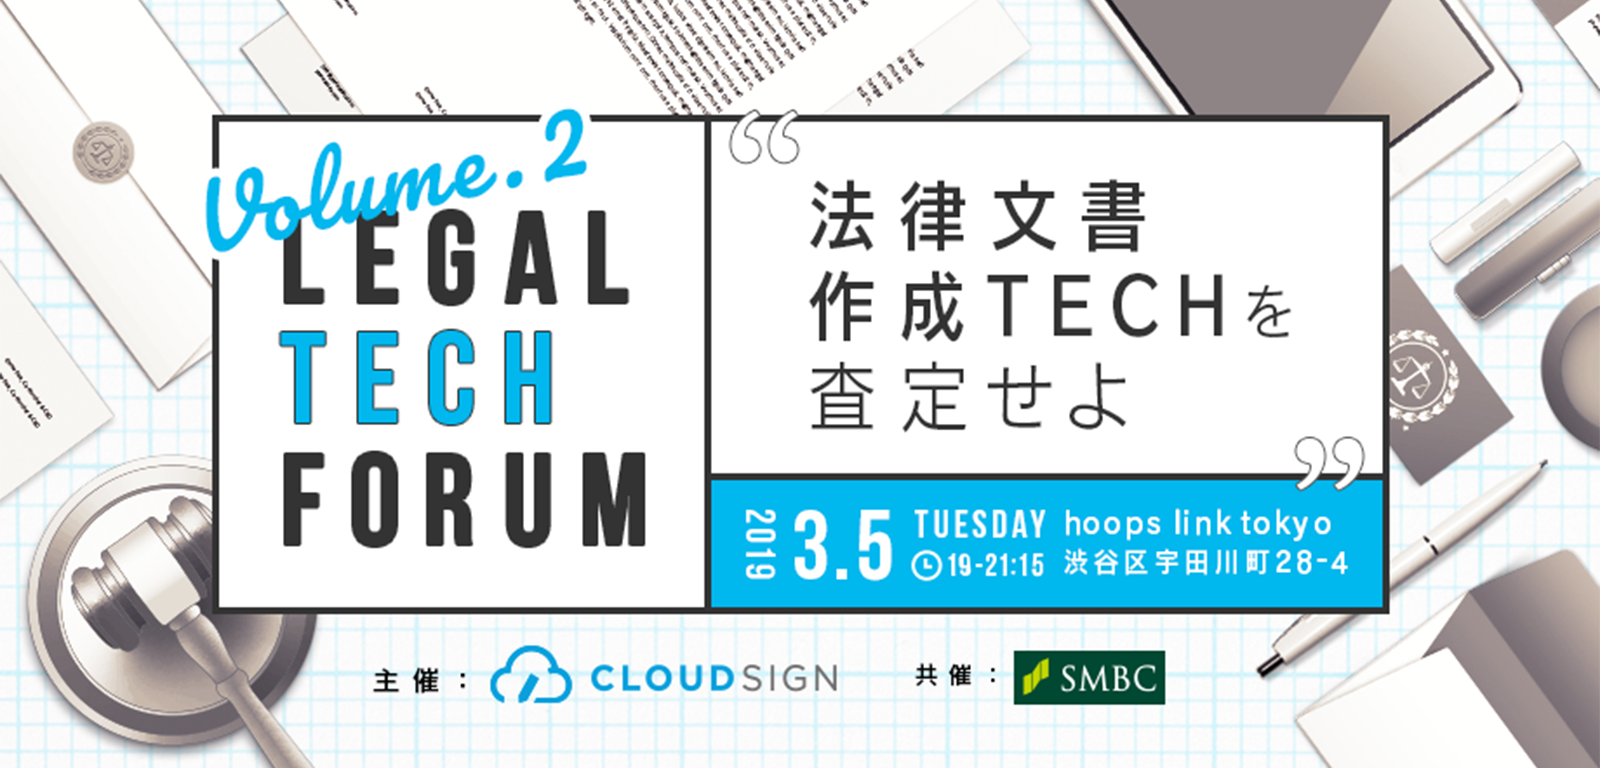 「Legal Tech Forum Vol.2 ー法律文書作成Techを査定せよー」を開催